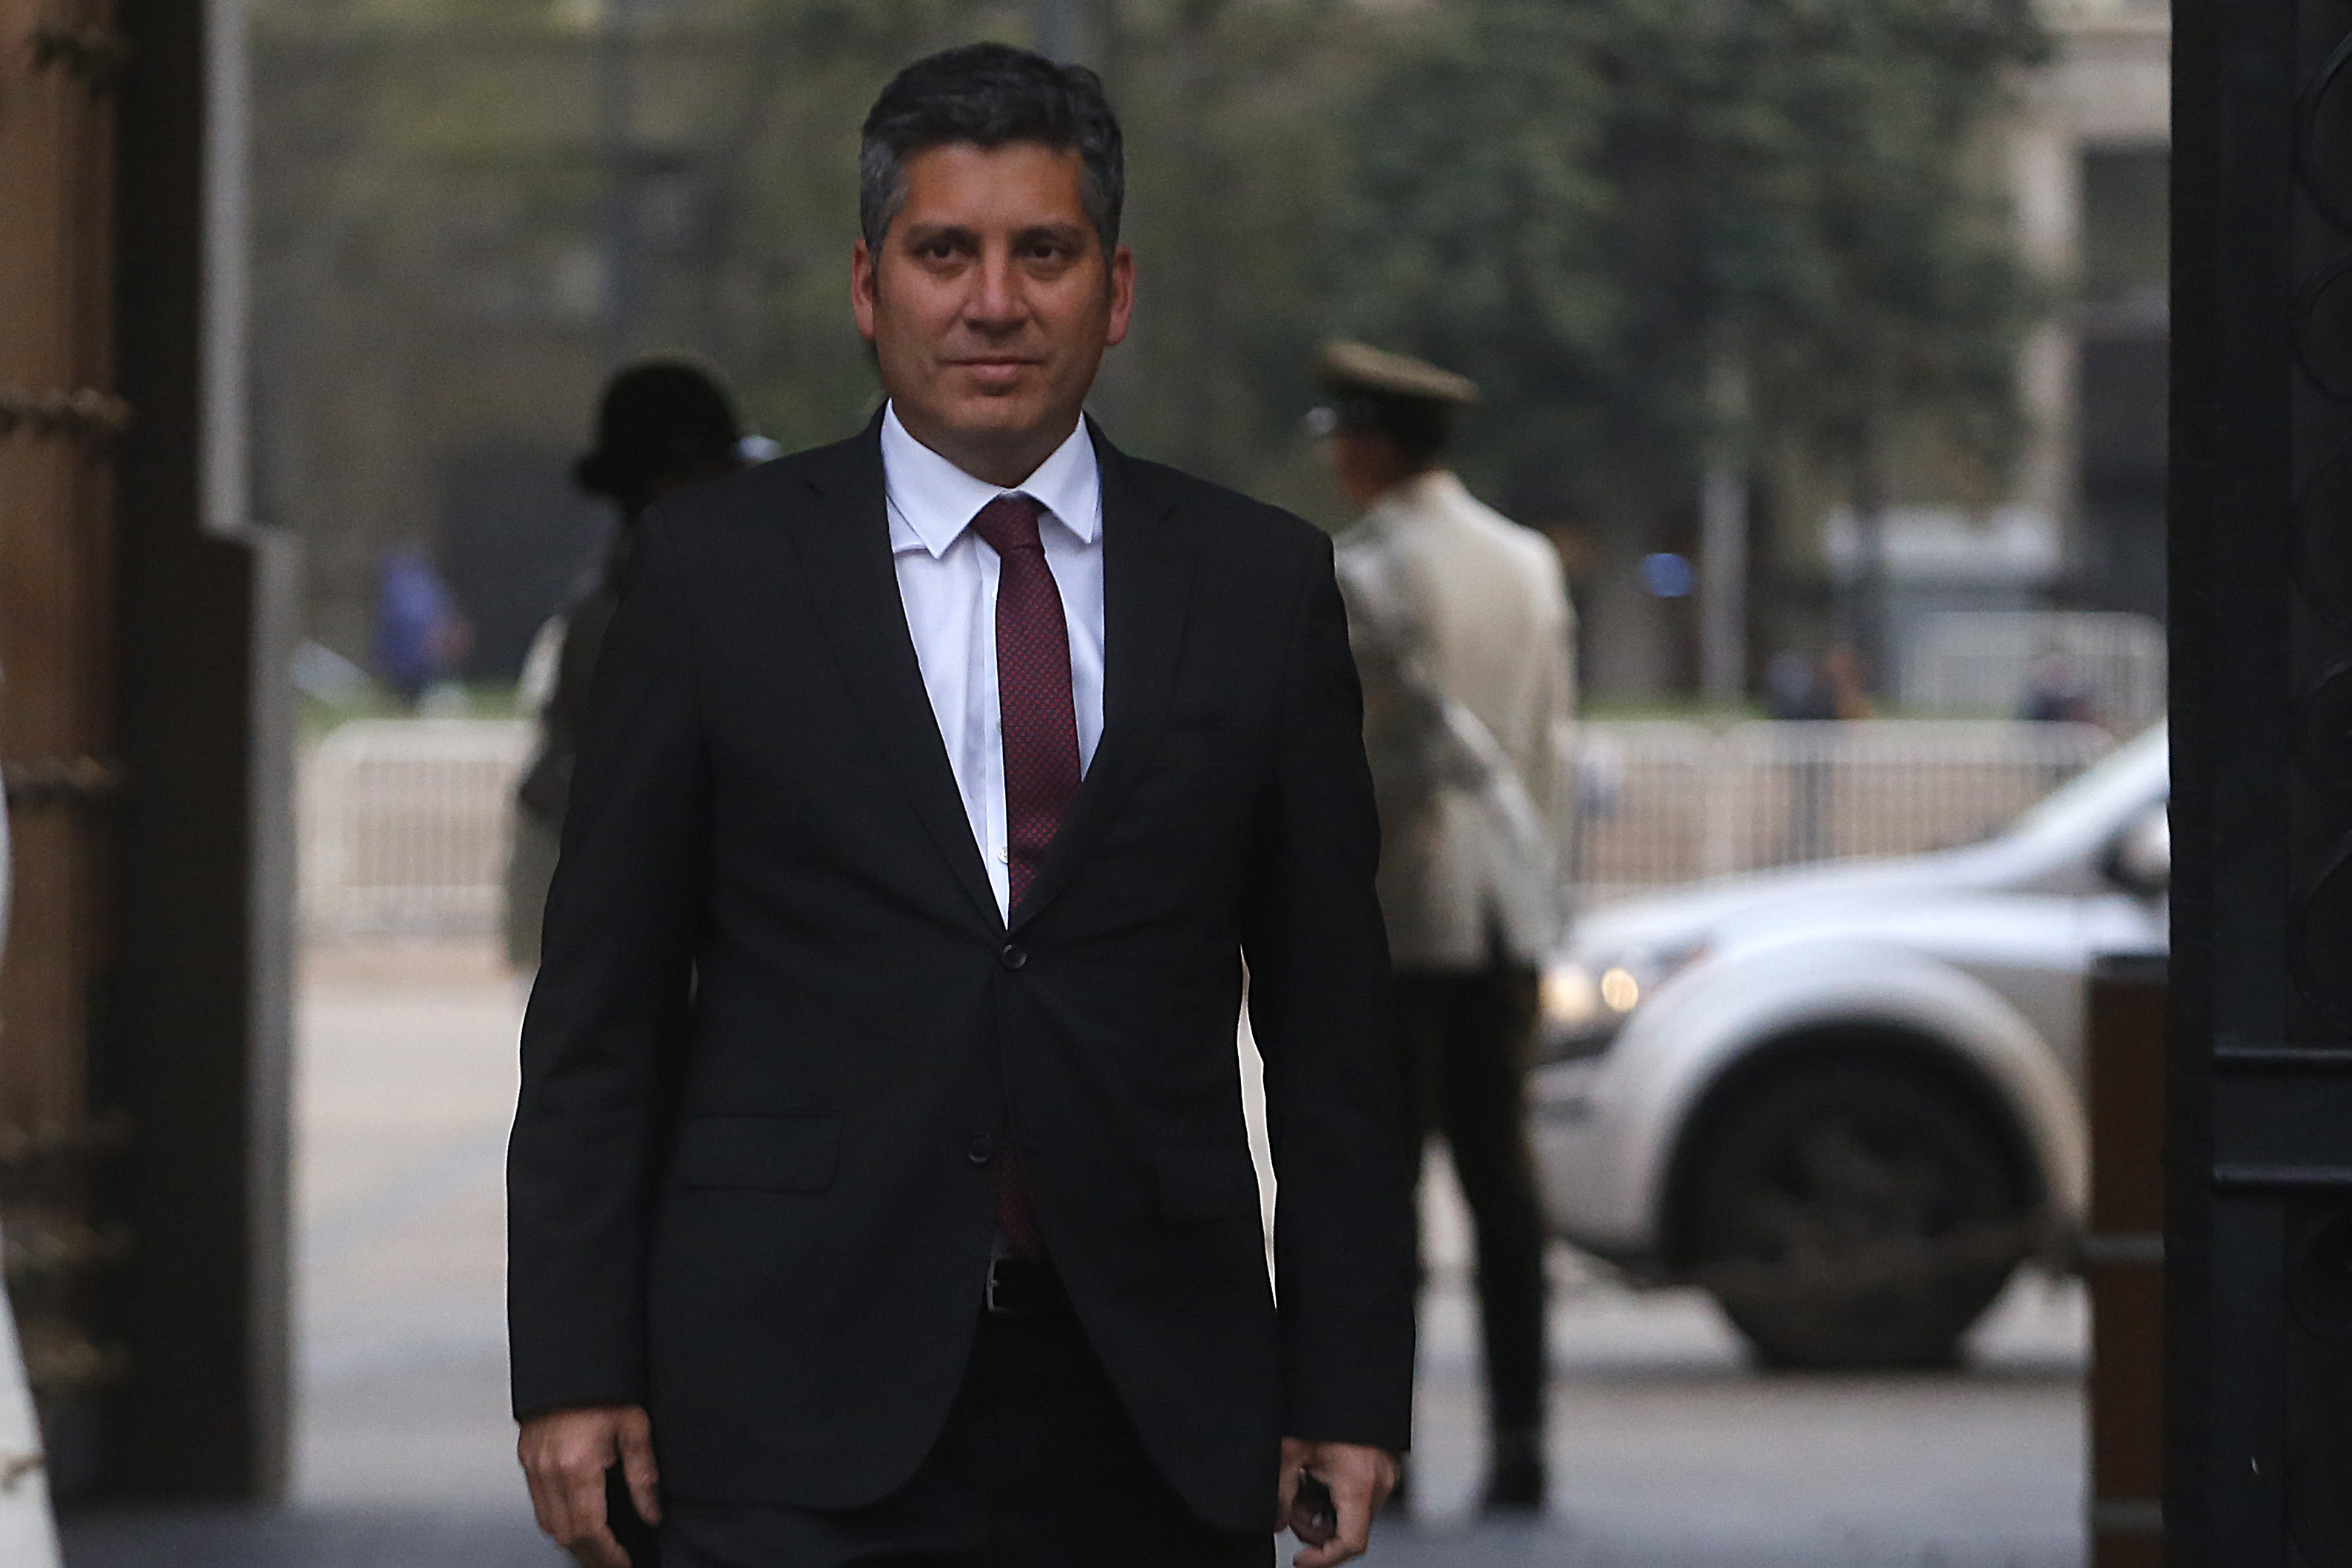 Claudio Ibáñez, el exintendente que rechazó Dominga: “Nuestra decisión fue profundamente técnica”